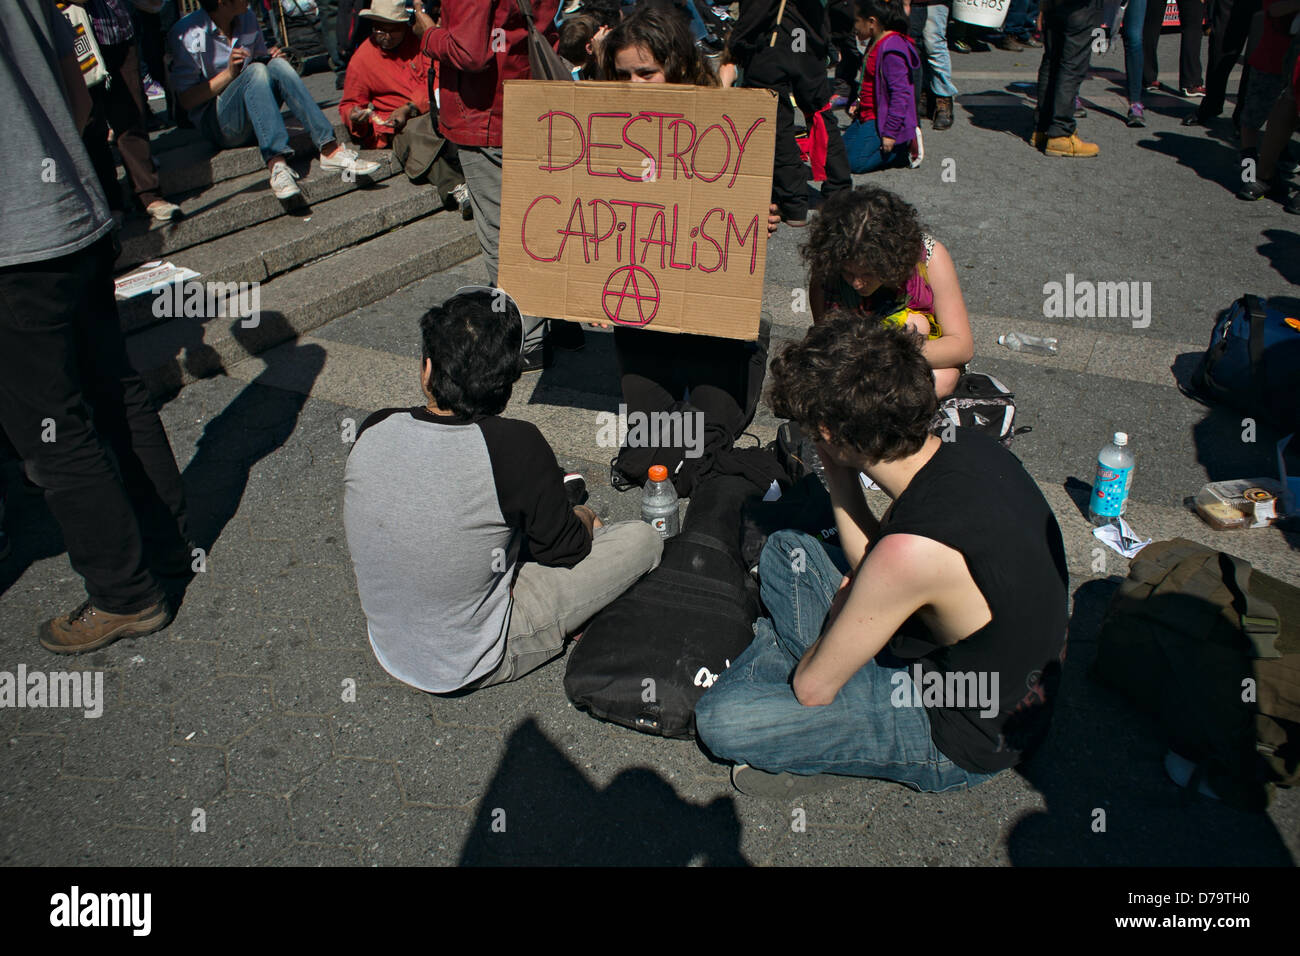 Mercredi, Mai 1, 2013, New York, NY, US : une femme est titulaire d'un écriteau "détruire le capitalisme comme des manifestants se rassemblent à New York's Union Square pour marquer la Journée internationale du Travail, également connu sous le nom de jour de mai. Banque D'Images